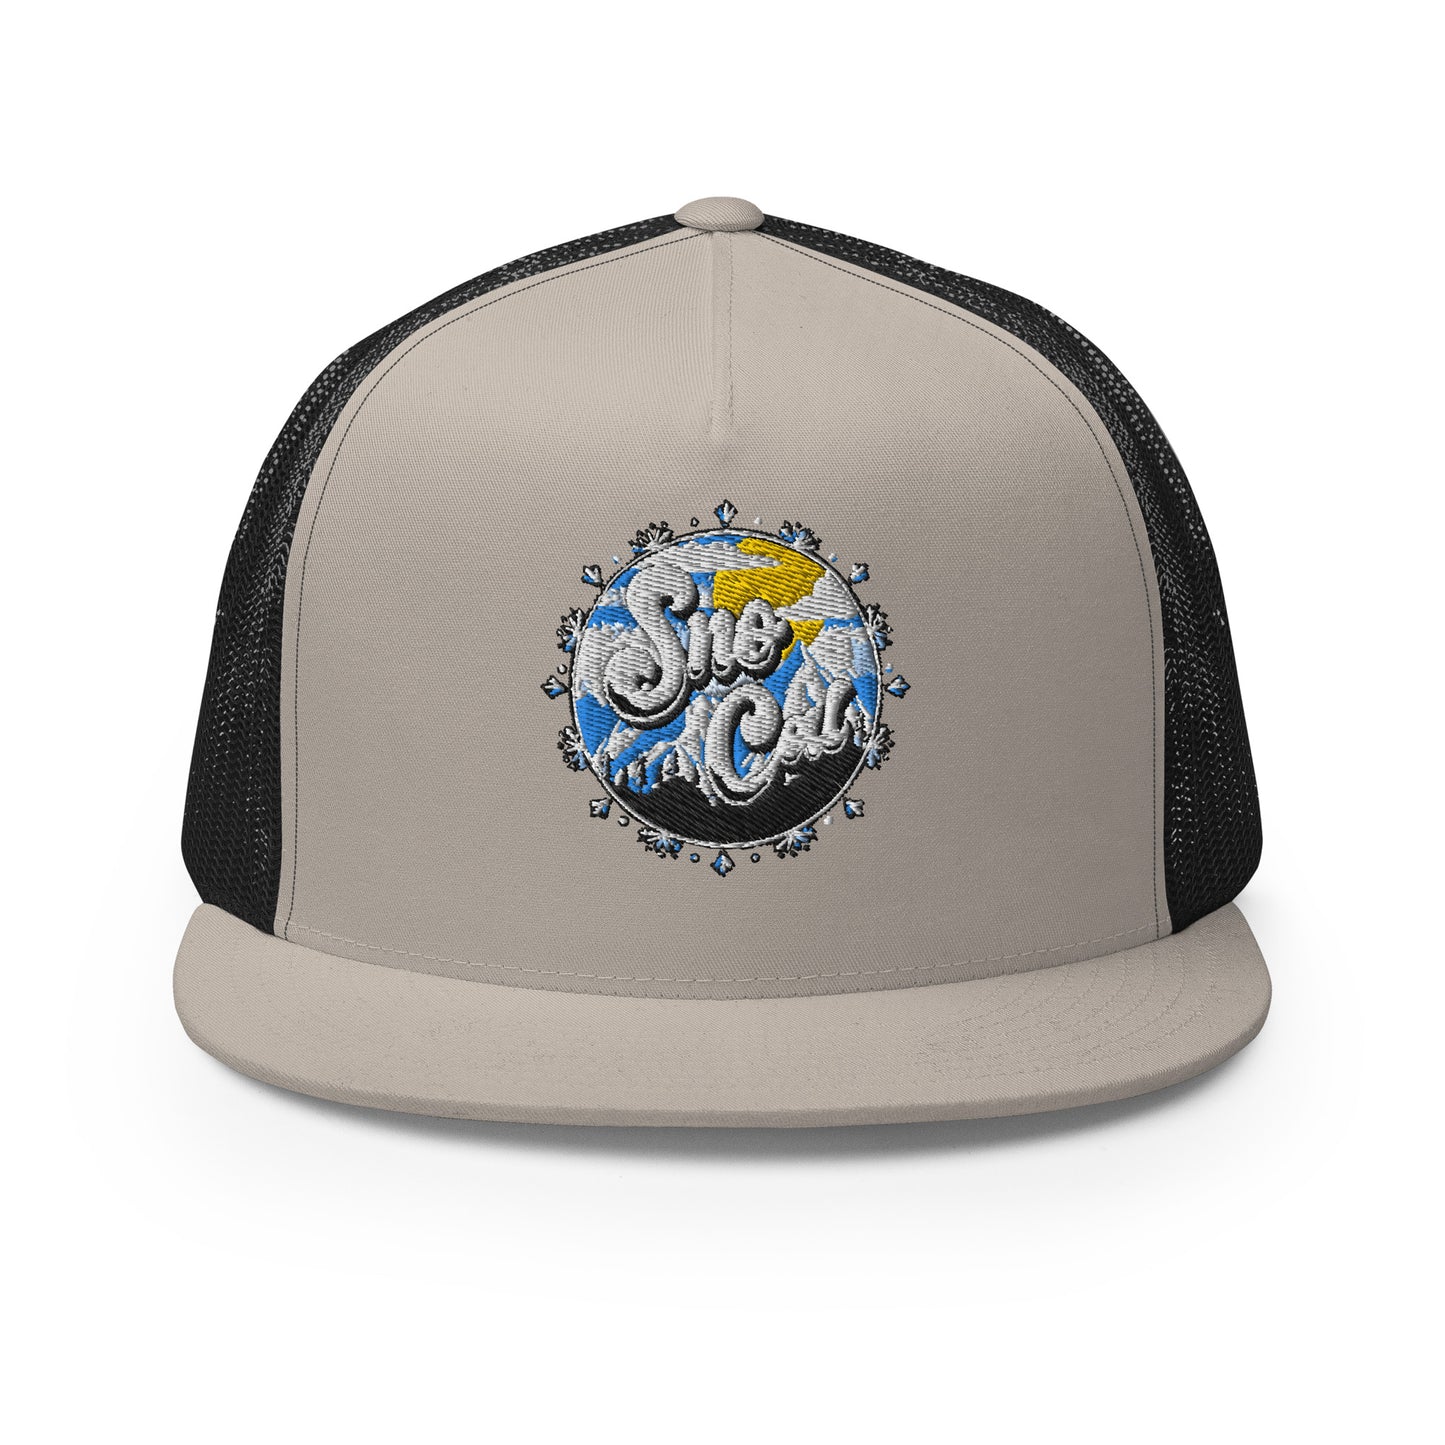 Sno Cal Trucker Cap (circle logo)